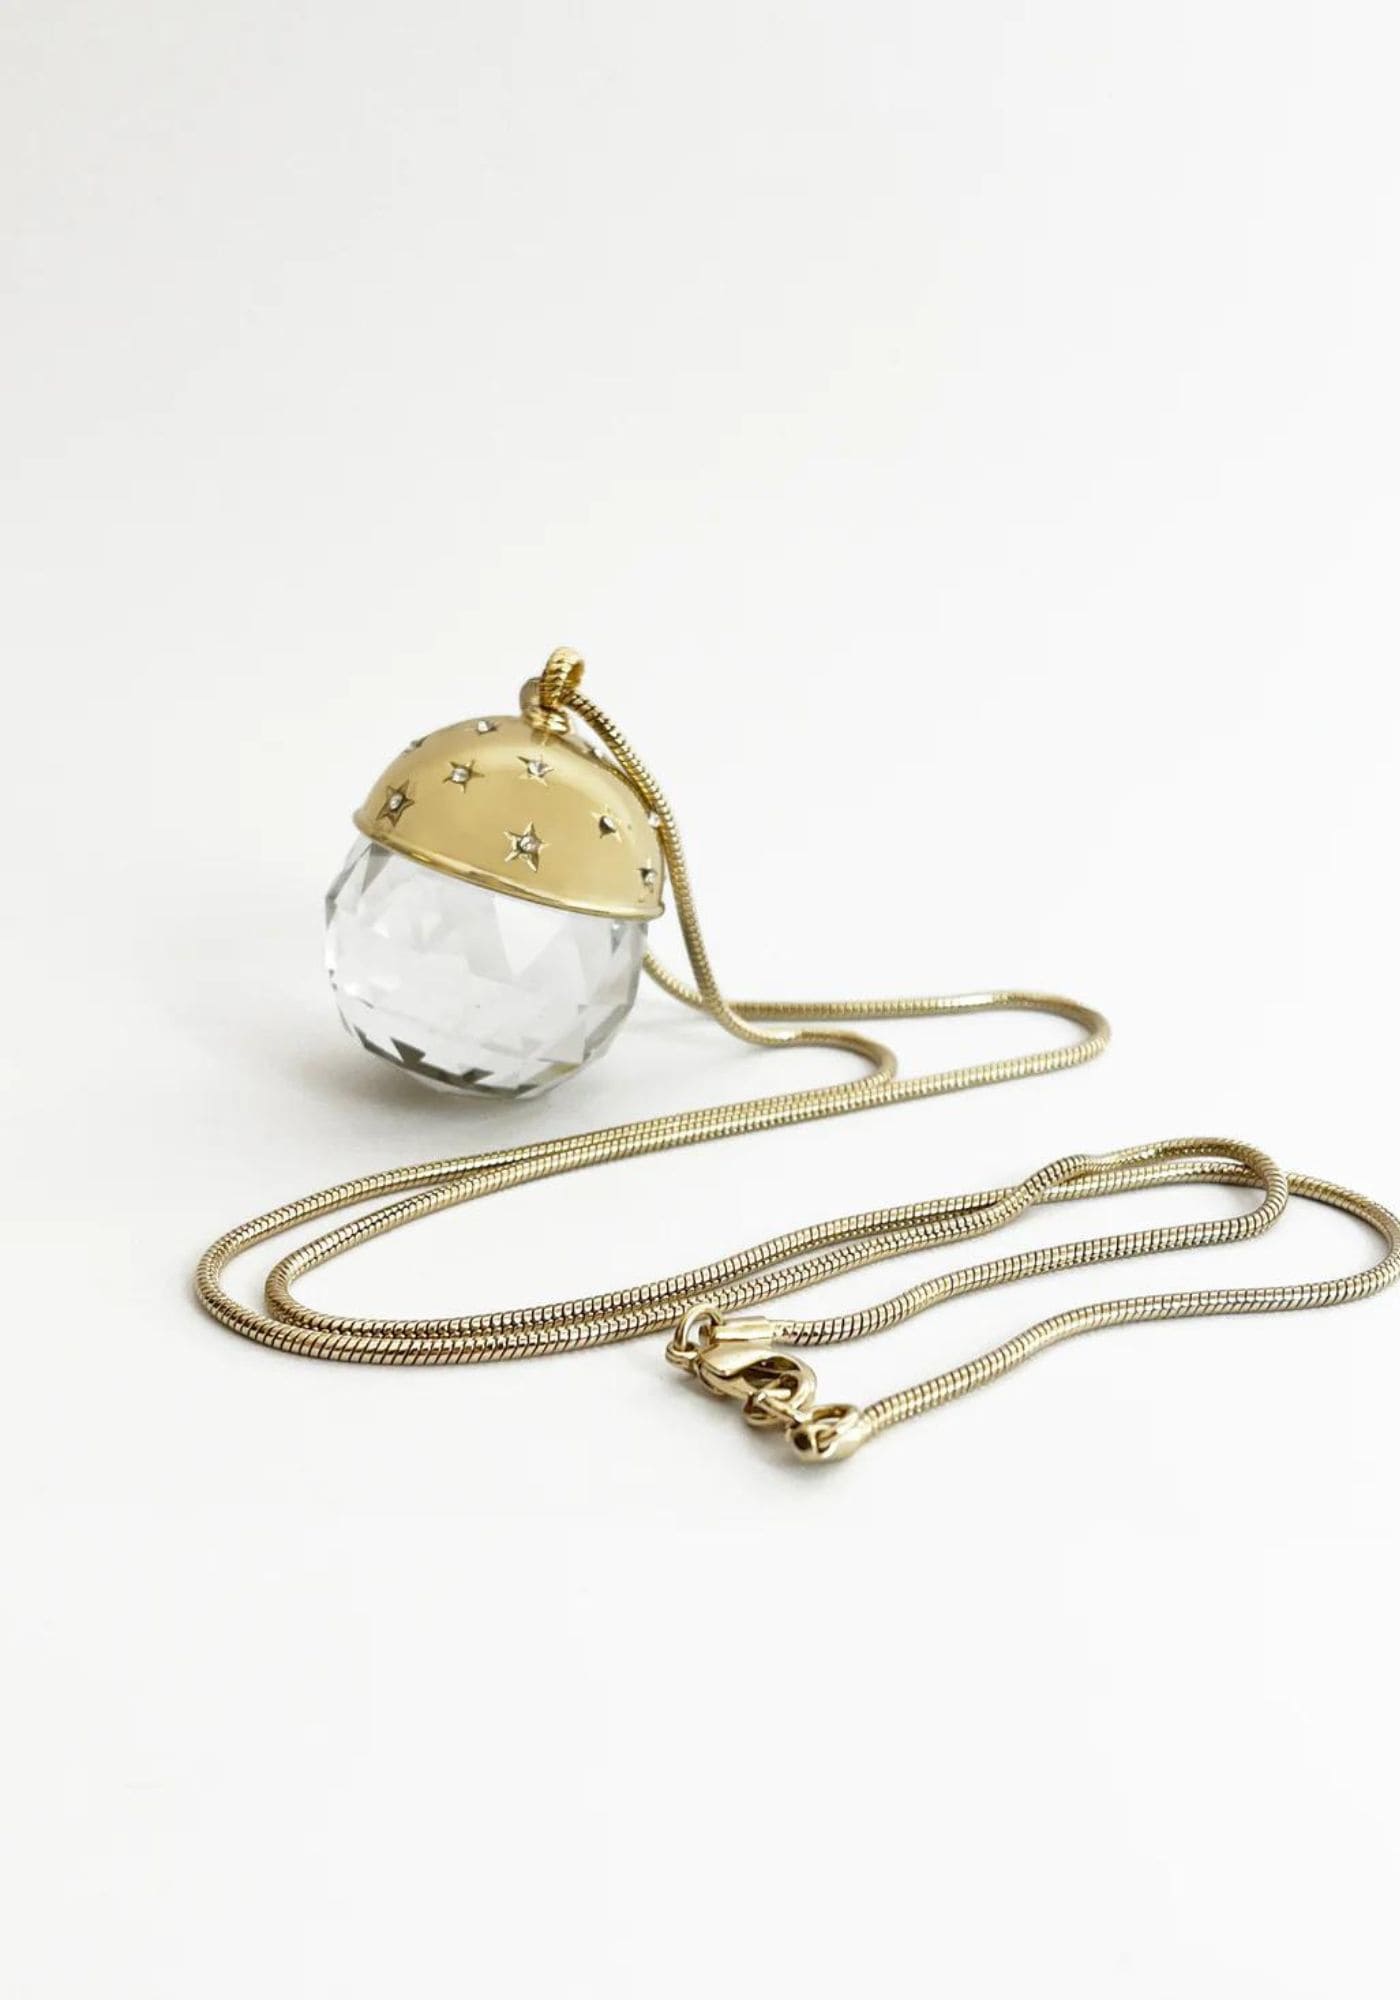 Le collier Crystal Ball de chez Maison 77 est posé sur un fond blanc 